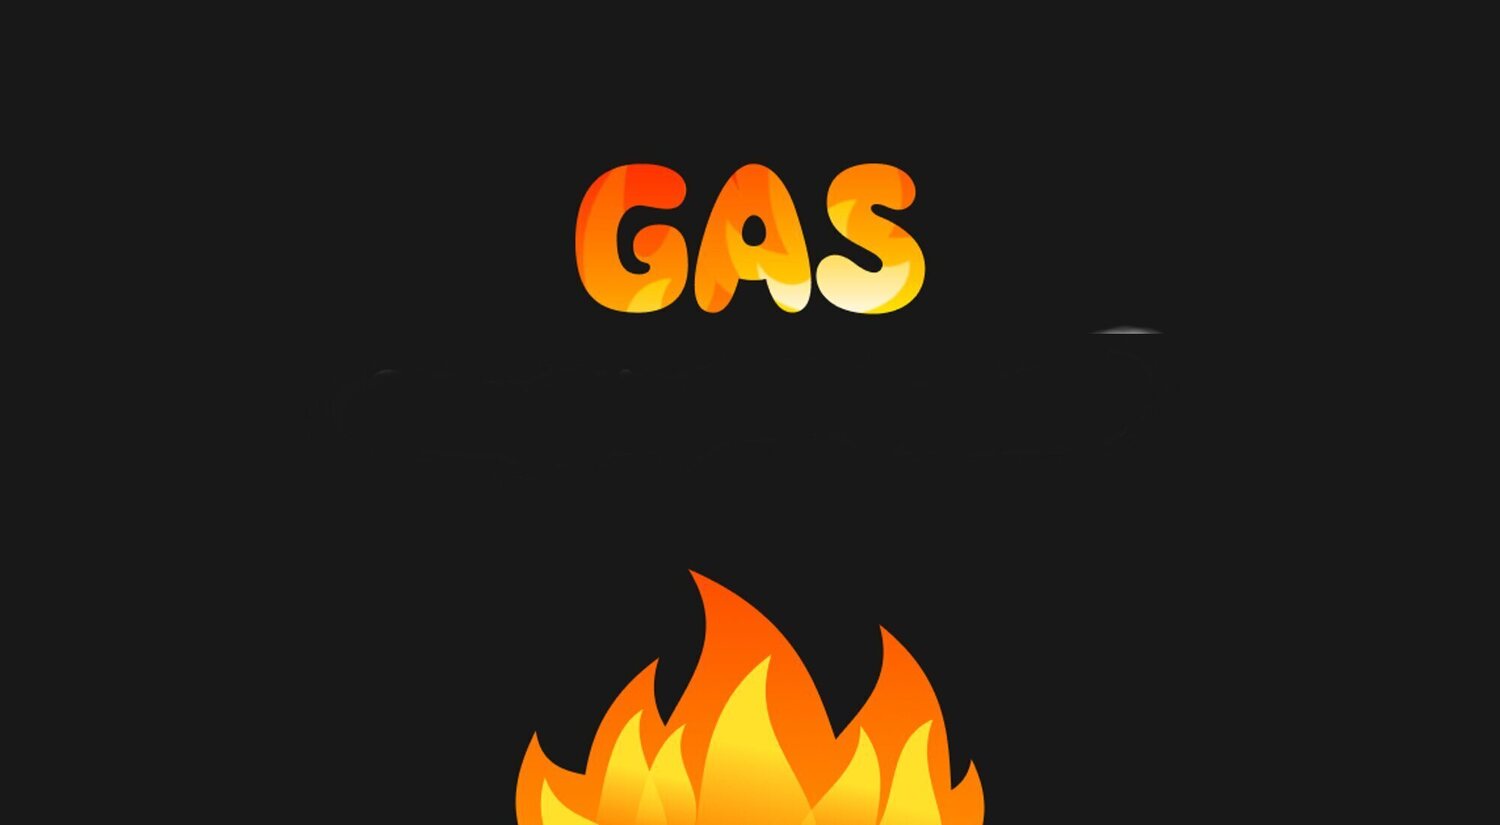 Qué es Gas, la nueva red social líder en descargas en EEUU